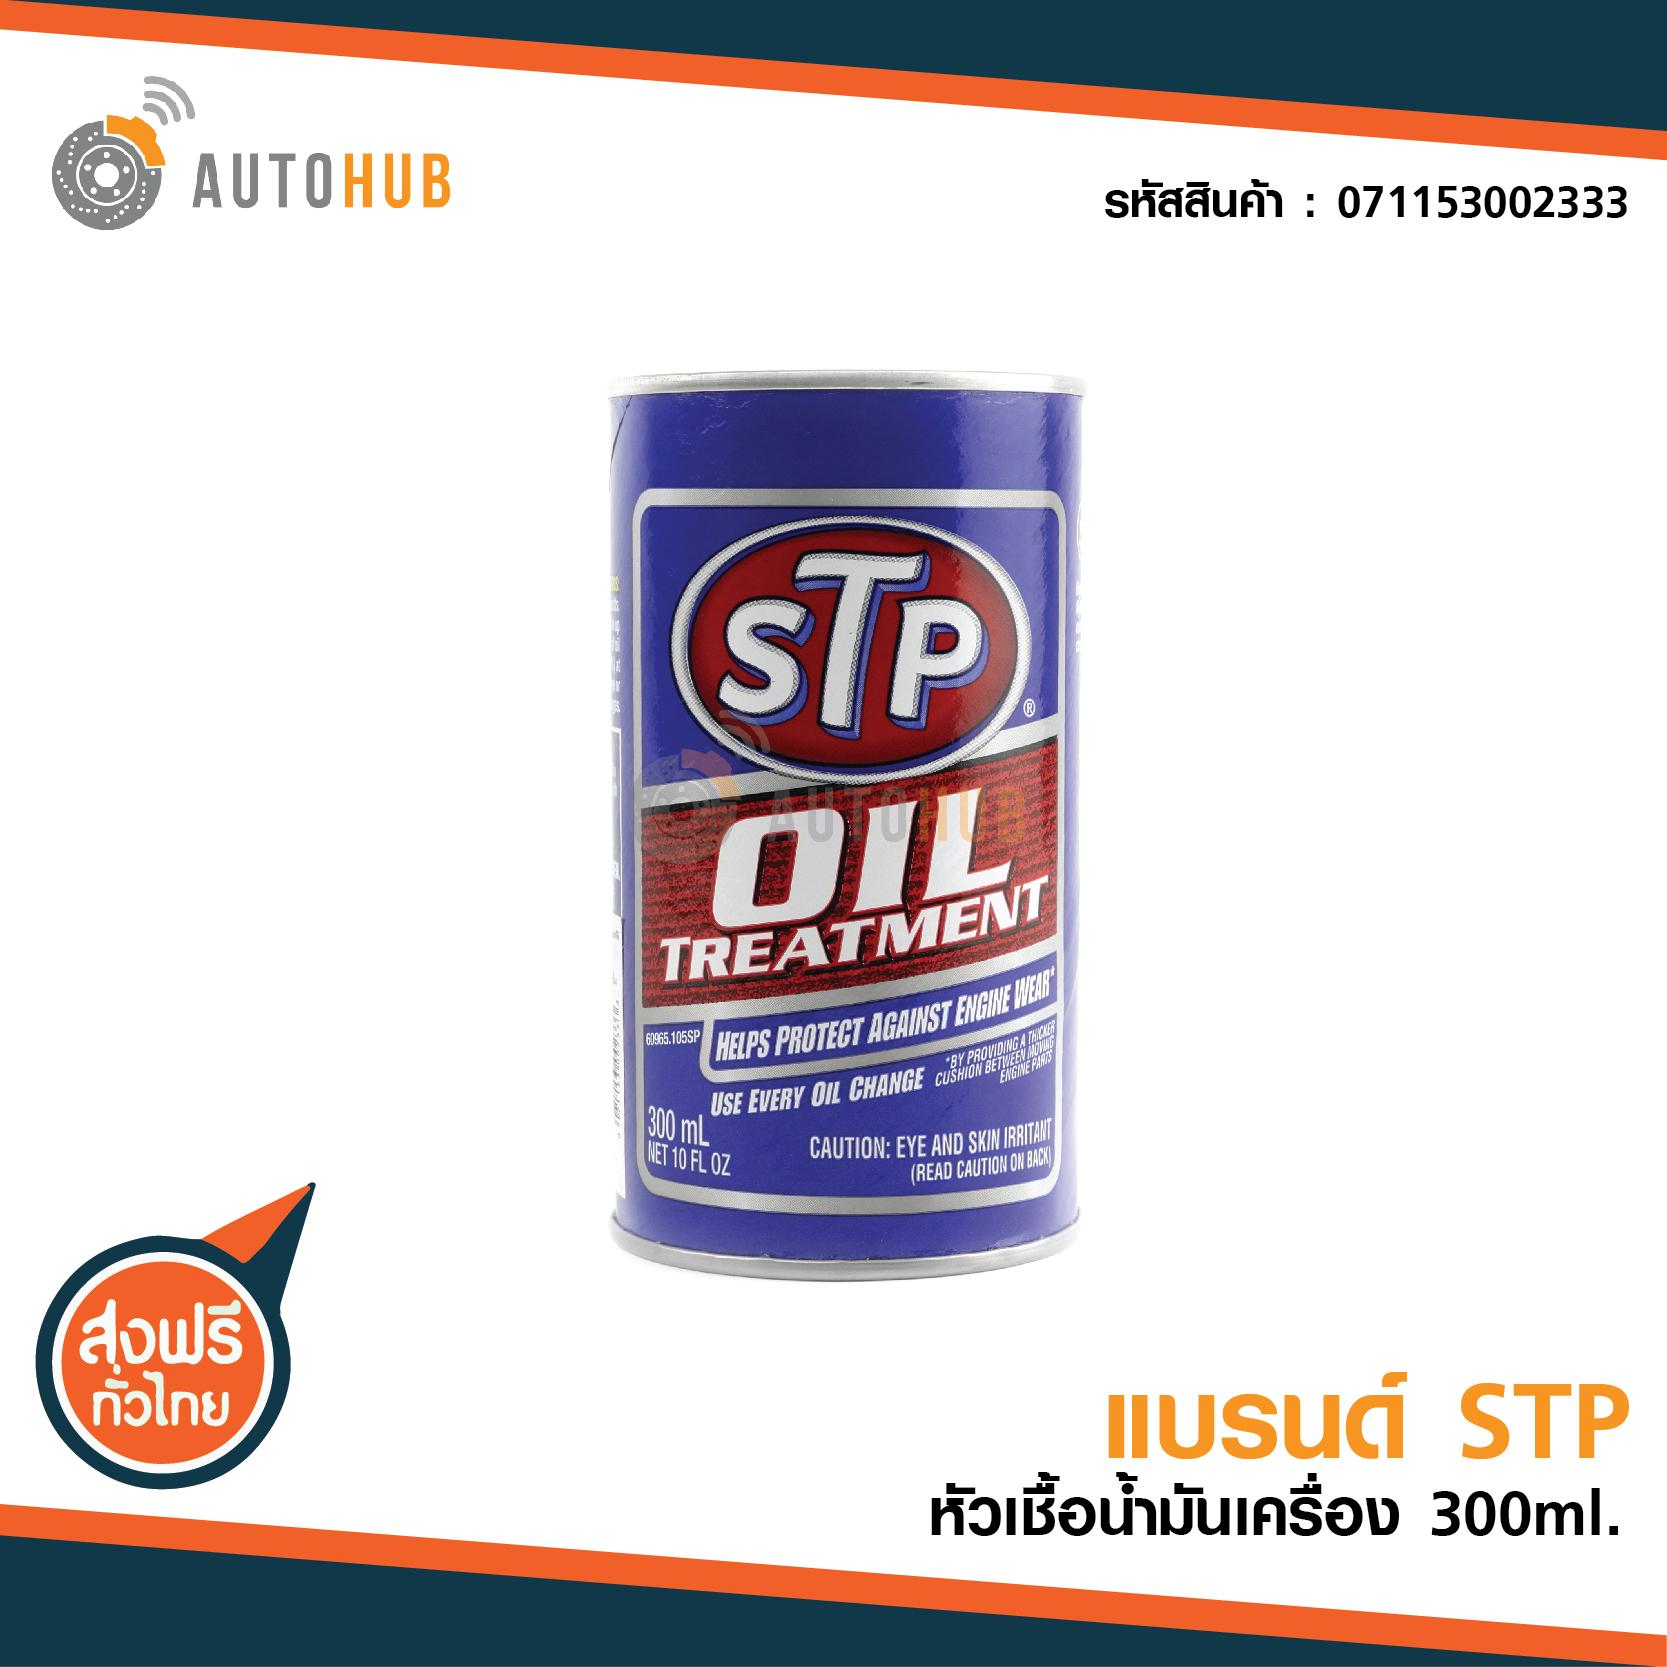 STP หัวเชื้อน้ำมันเครื่อง ขนาด 300 มิลลิลิตร STP OIL TREATMENT 300ml ***ใช้ได้ทั้งดีเซลและเบนซิน*** ลดราคาพิเศษ ซื้อ 2 ชิ้นส่งฟรี !! (071153002333)